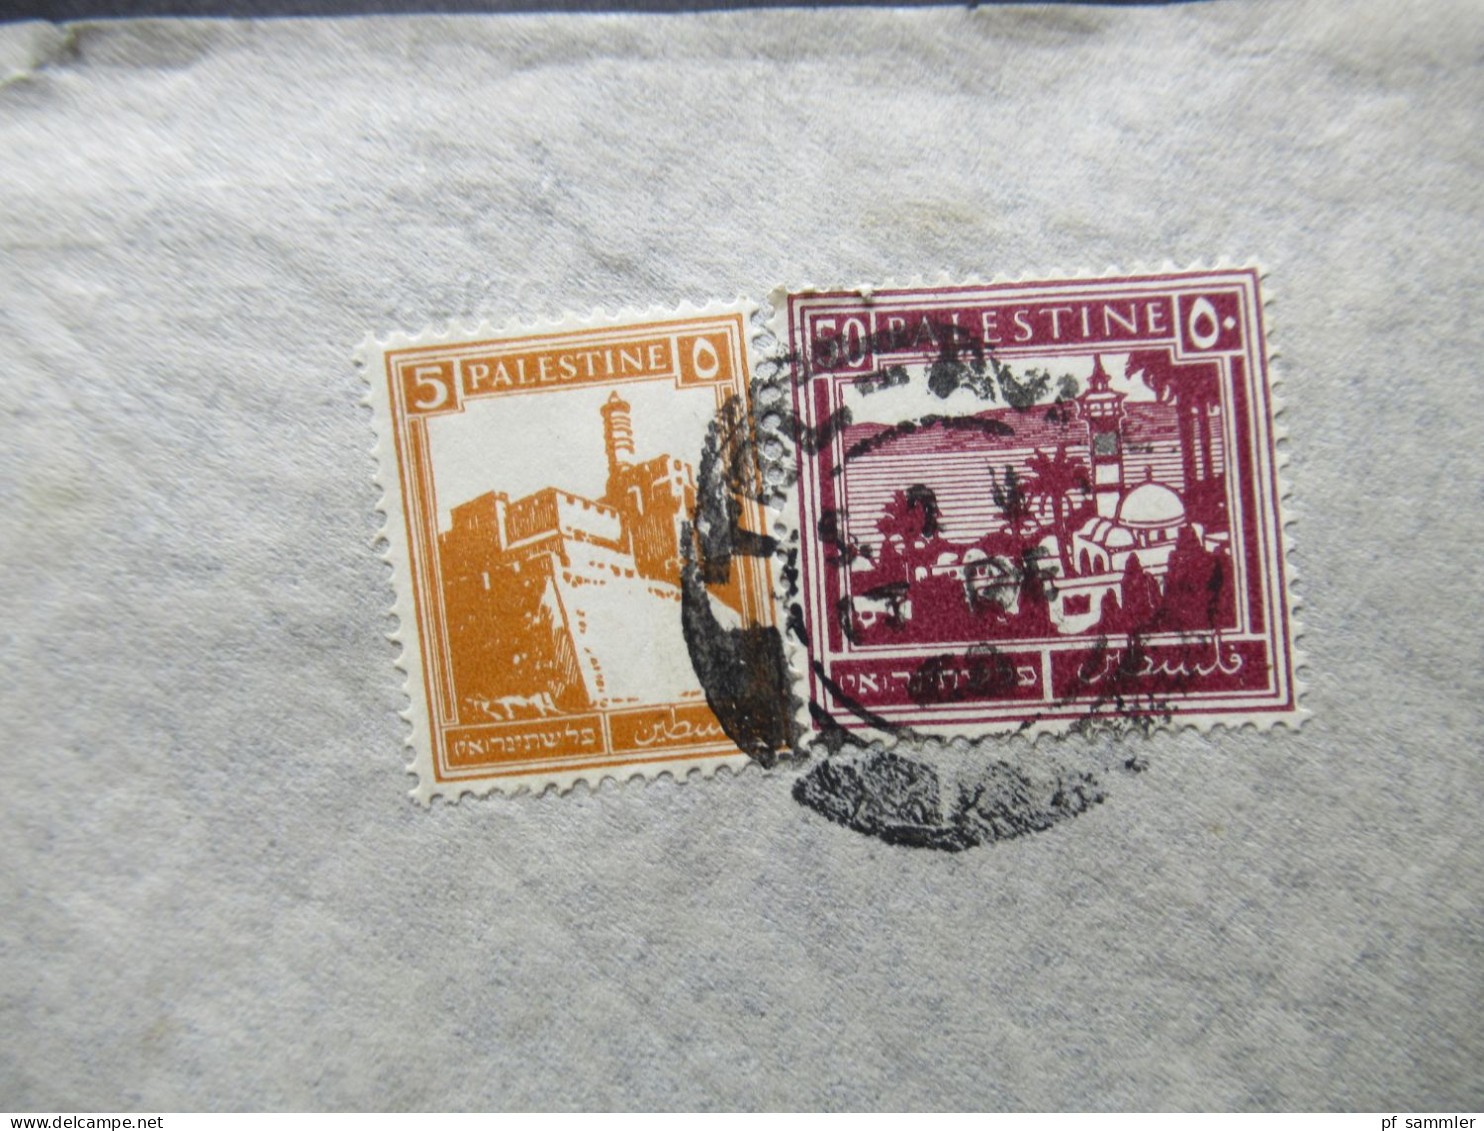 Paästina / Palestine Um 1930 By Air Mail / Luftpost In Die CSR Stempel Tel Aviv Umschlag H. Schrenzel Orient Agency - Palestina